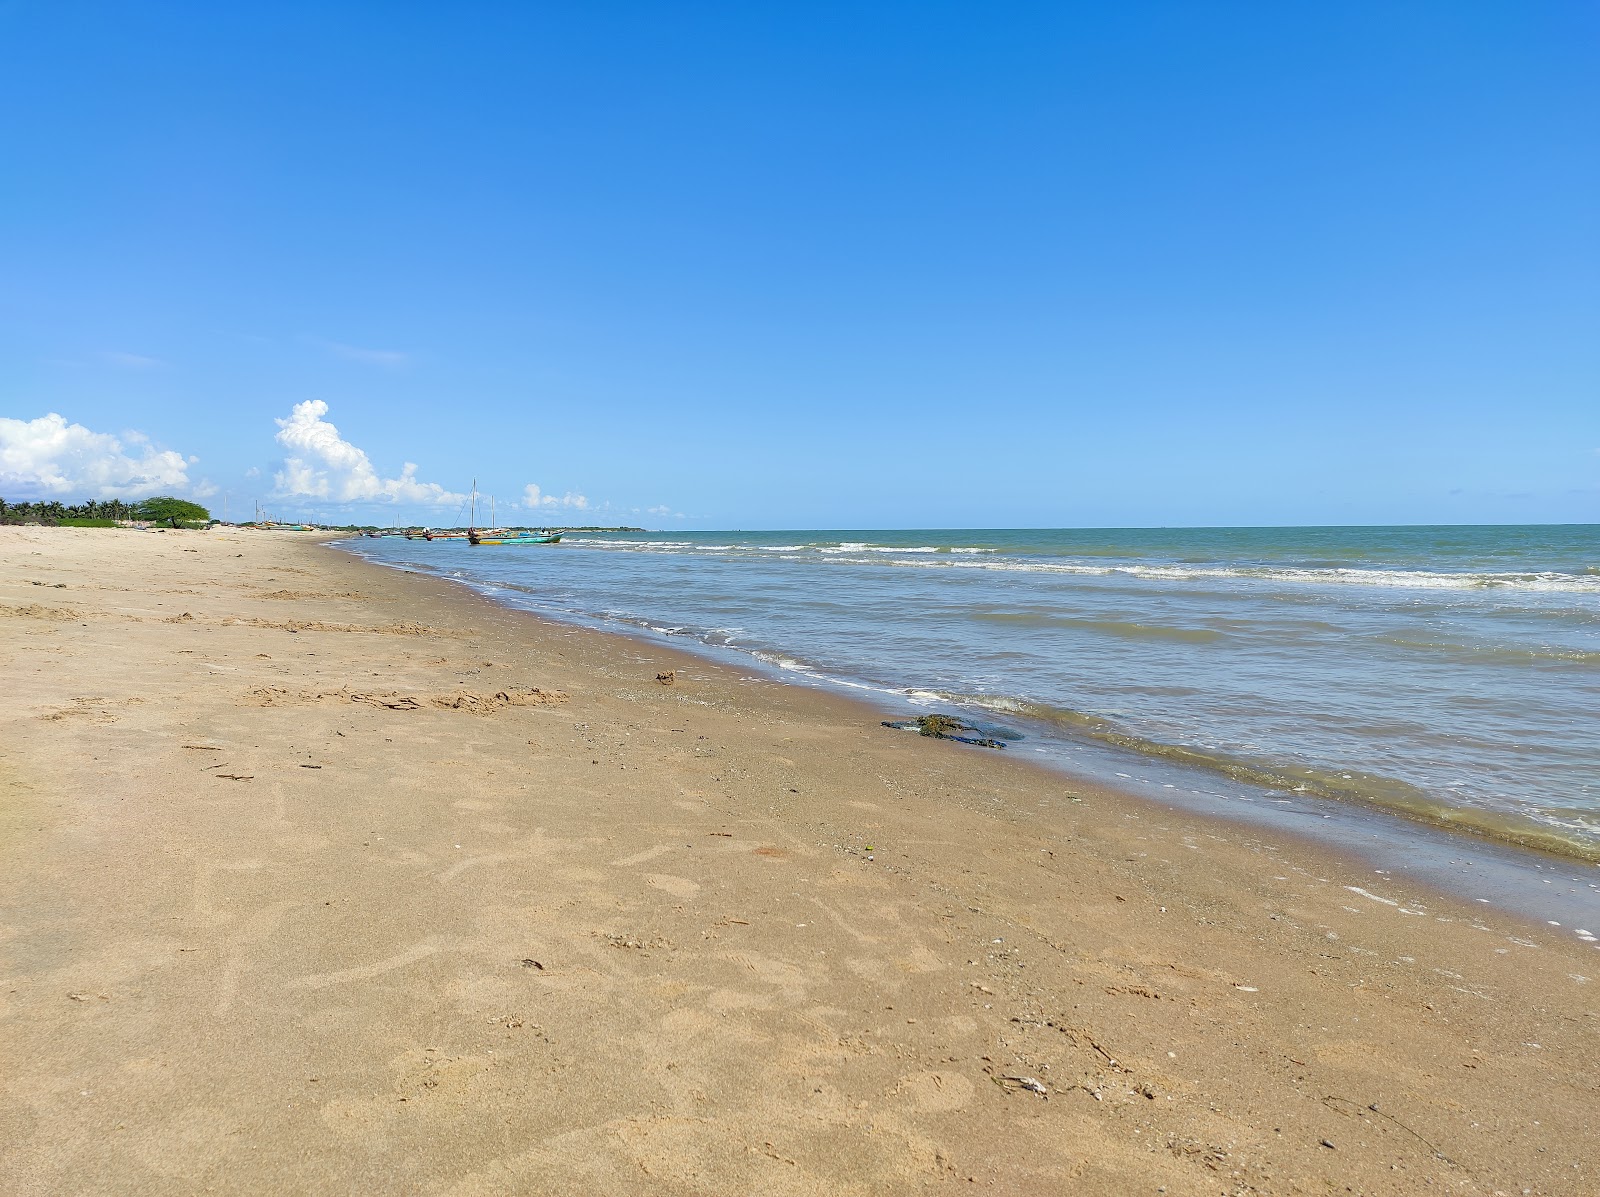 Pudupattinam Delta Beach'in fotoğrafı geniş plaj ile birlikte